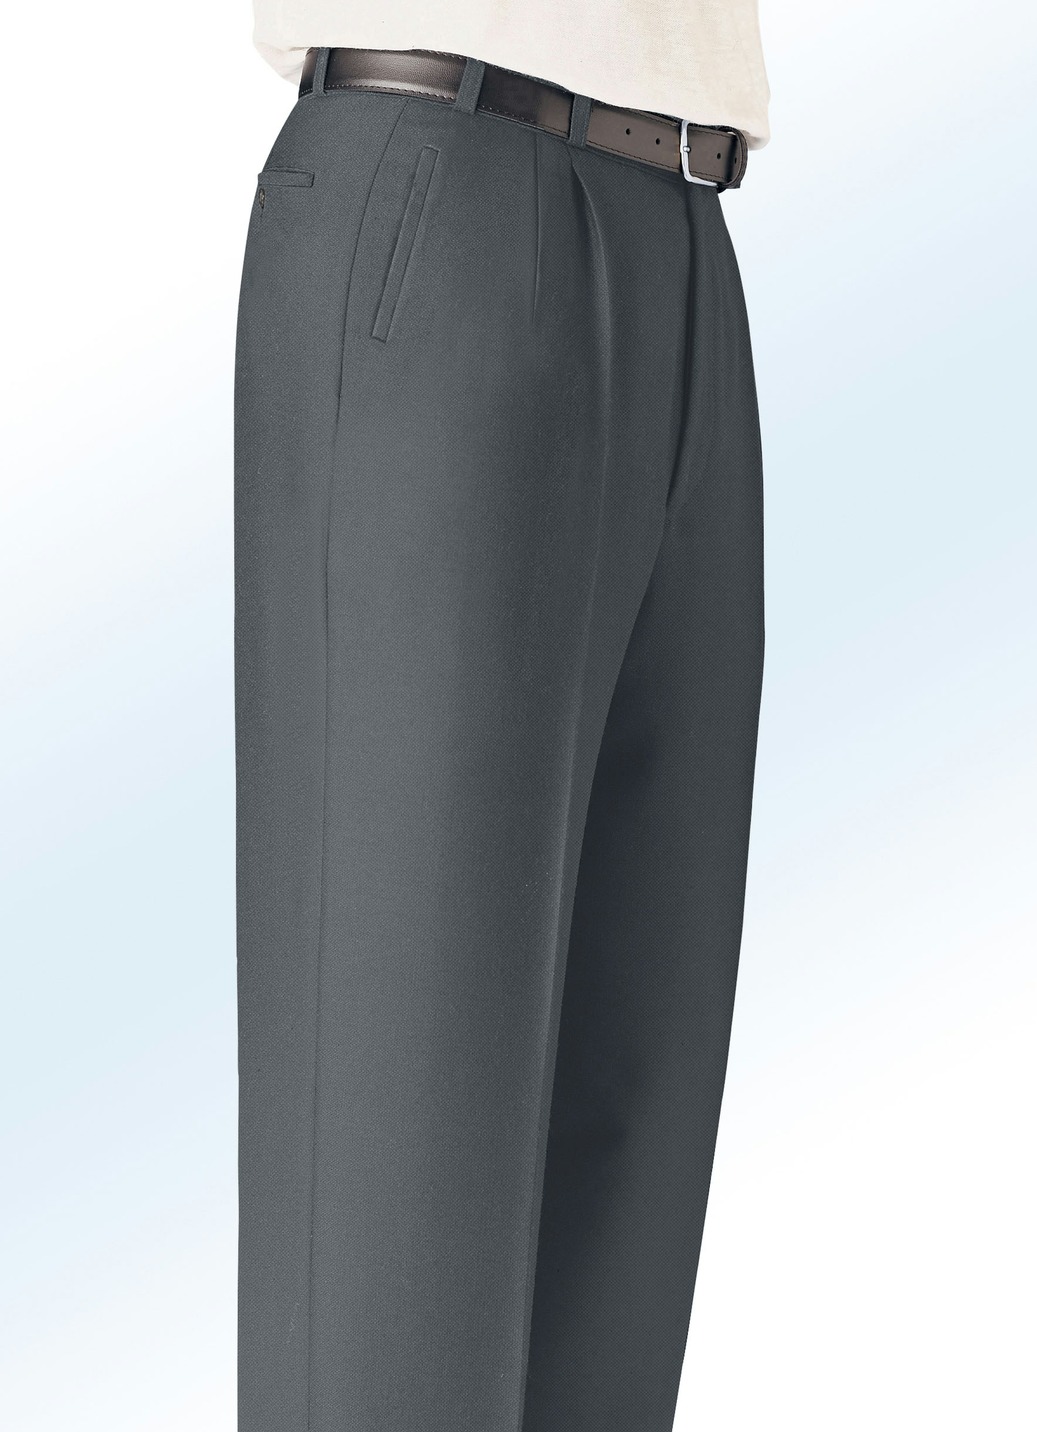 "Klaus Modelle"-Hose mit seitlichen Paspeltaschen in 5 Farben, Dunkelgrau, Größe 48 von KLAUS MODELLE